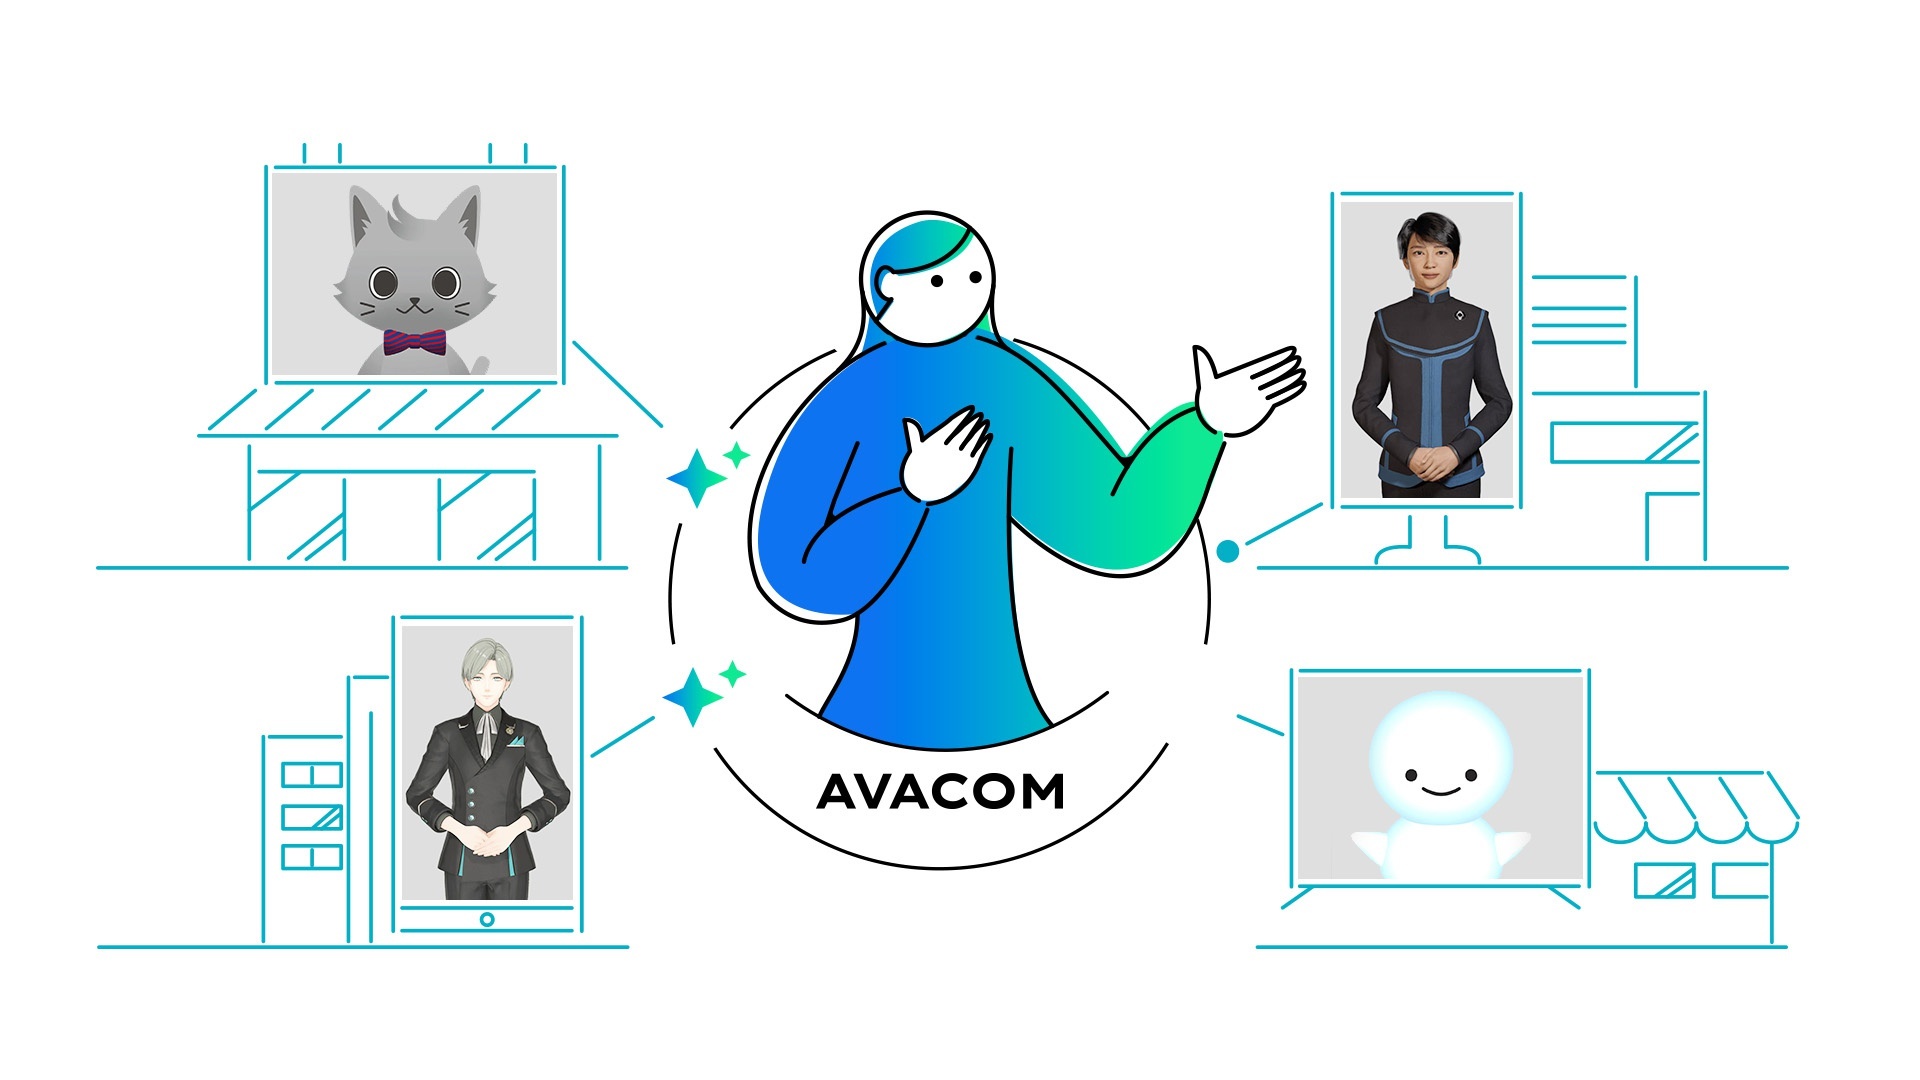 『AVACOM』を採用すると、ひとつの場所から複数の拠点の受付業務を同時にこなすことが可能となる